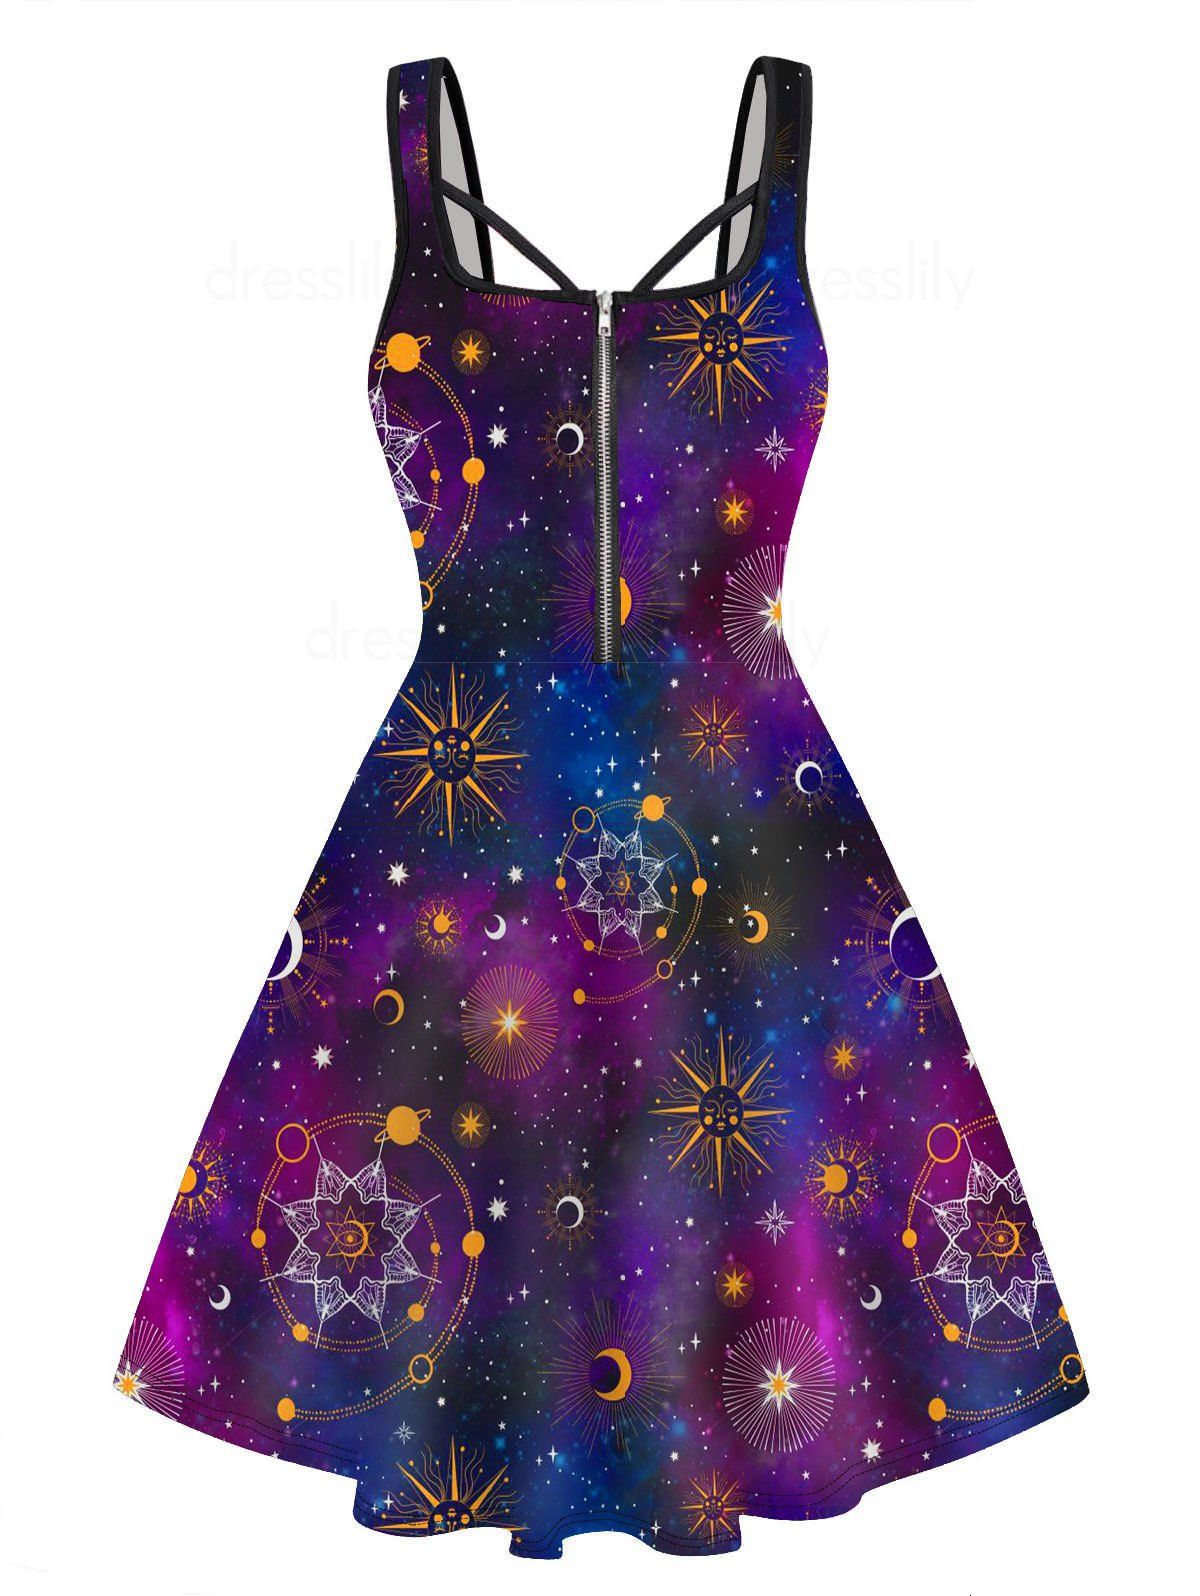 Celestial Sun Moon Galaxy Print Mini Dress Half Zipper Sleeveless Casual Dress - PURPLE L